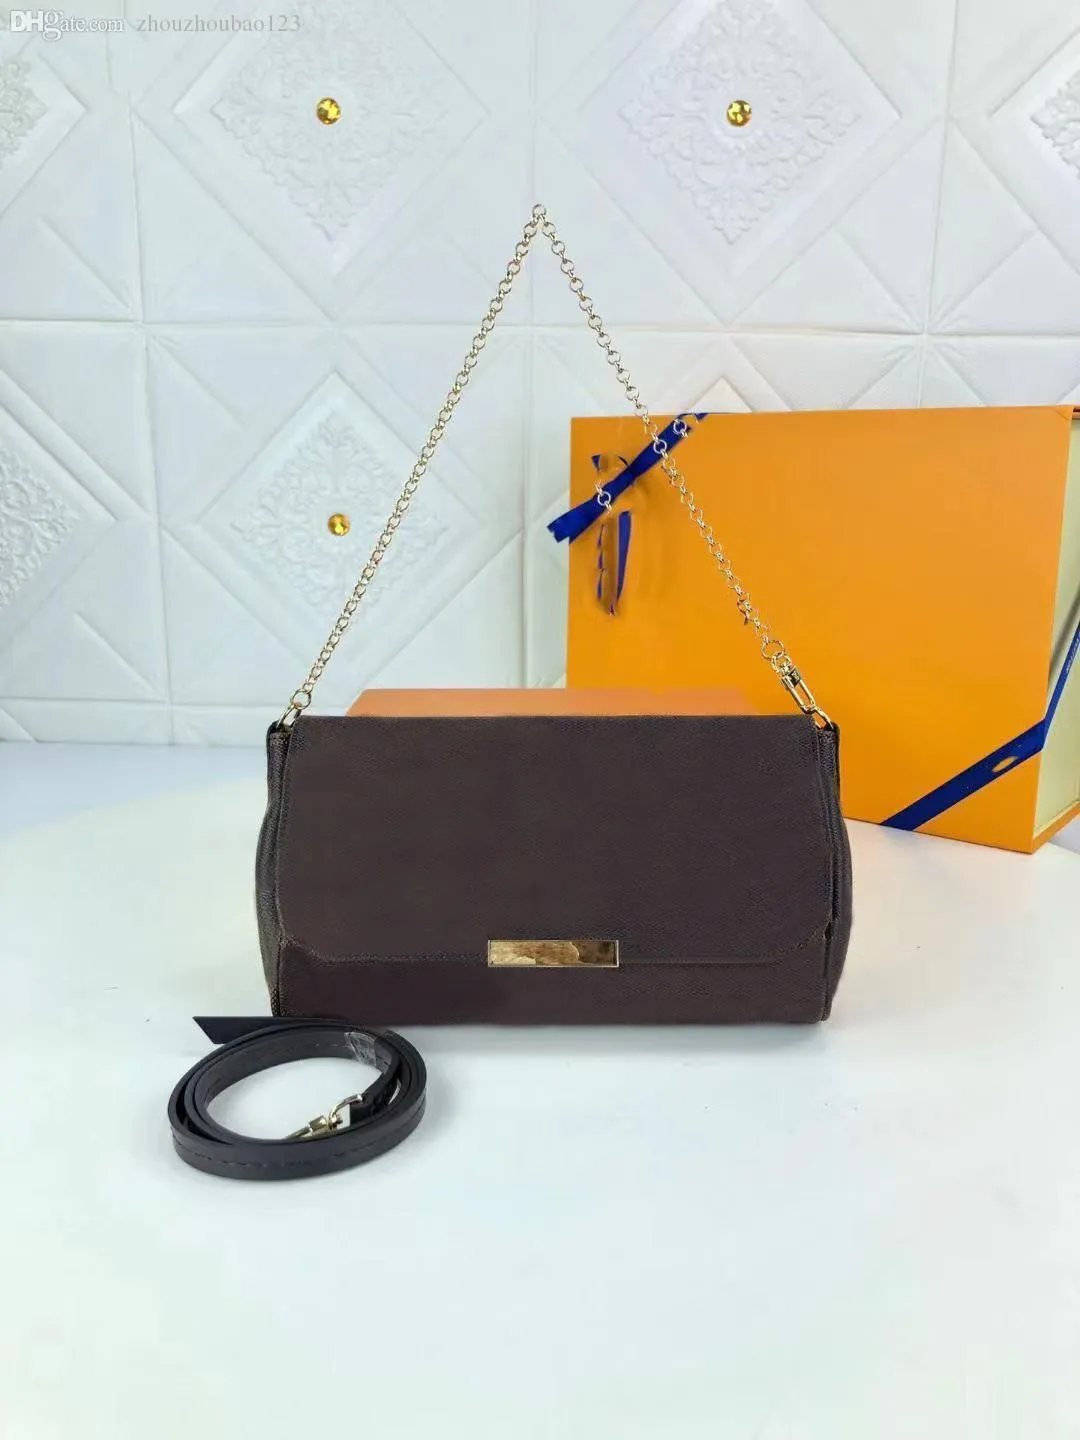 Hochwertige neue Mode Umhängetasche Handtaschen Handtasche Geldbörsen ZUBEHÖR Tasche Frauen klassischen Stil echtes Leder Umhängetaschen